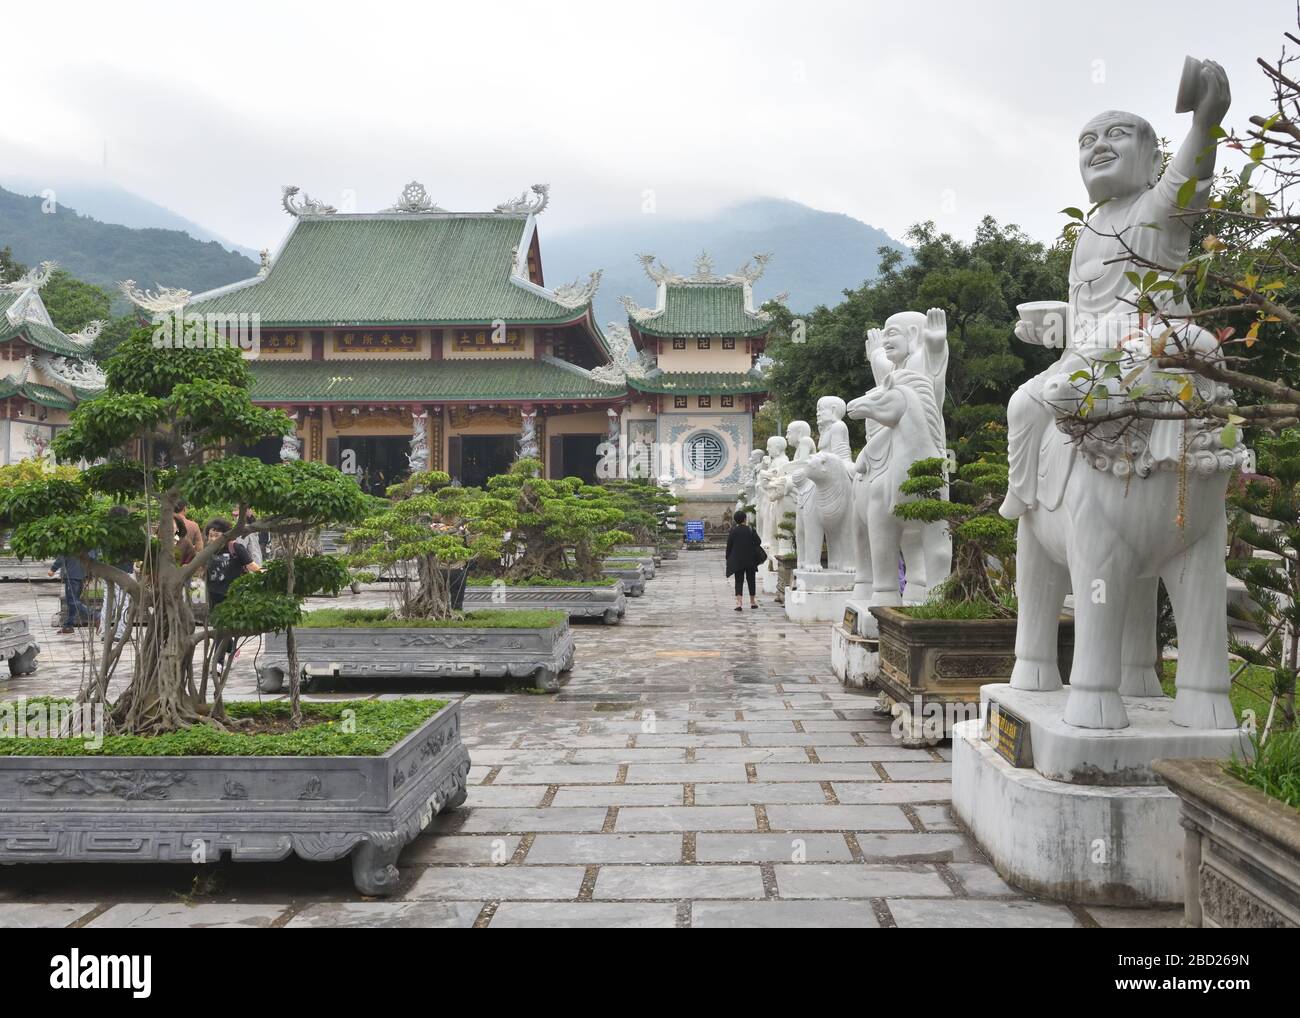 Des figures de statue en marbre bordent les jardins bonsaï de Vườn Lâm Tỳ ni au temple bouddhiste Chùa Linh Ứng à Da Nang, Vietnam, Asie Banque D'Images